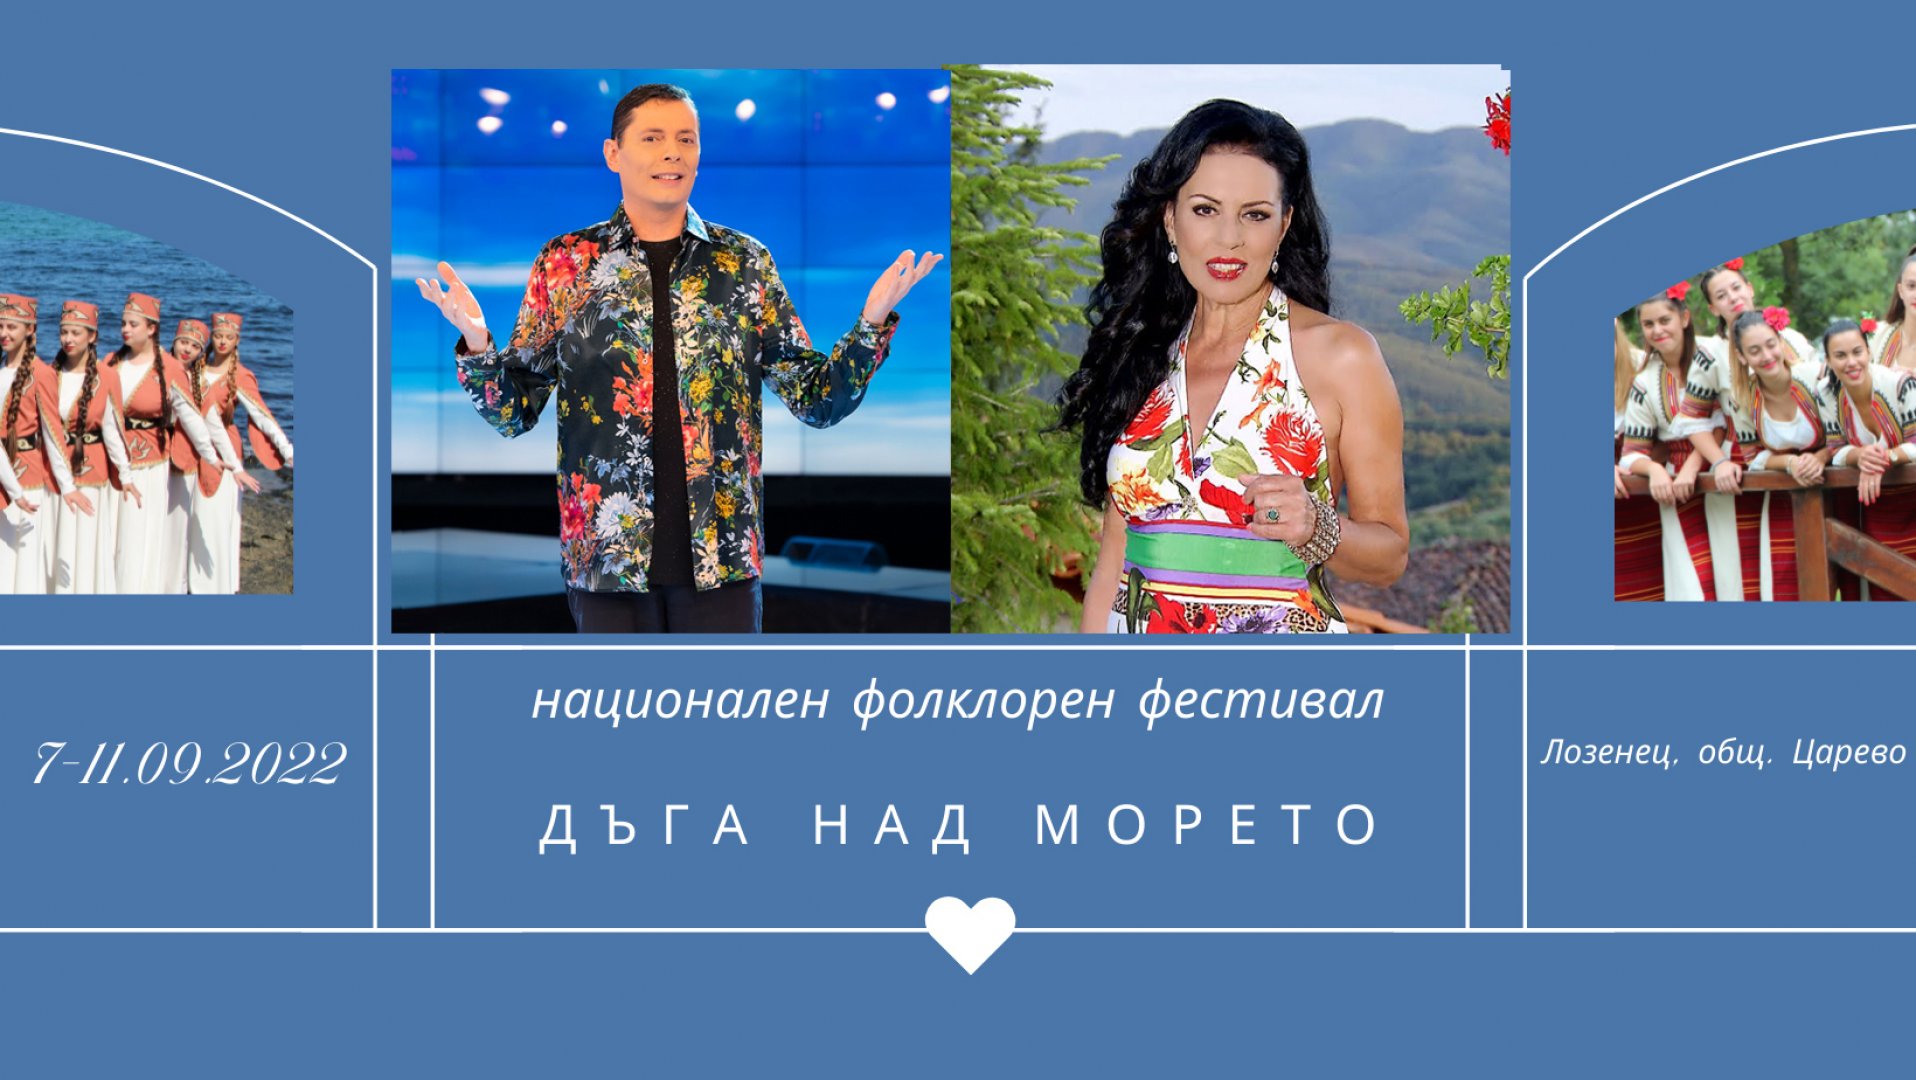 Тази година специални гости на фестиавала ще бъдат Славка Калчева и Александър Александров